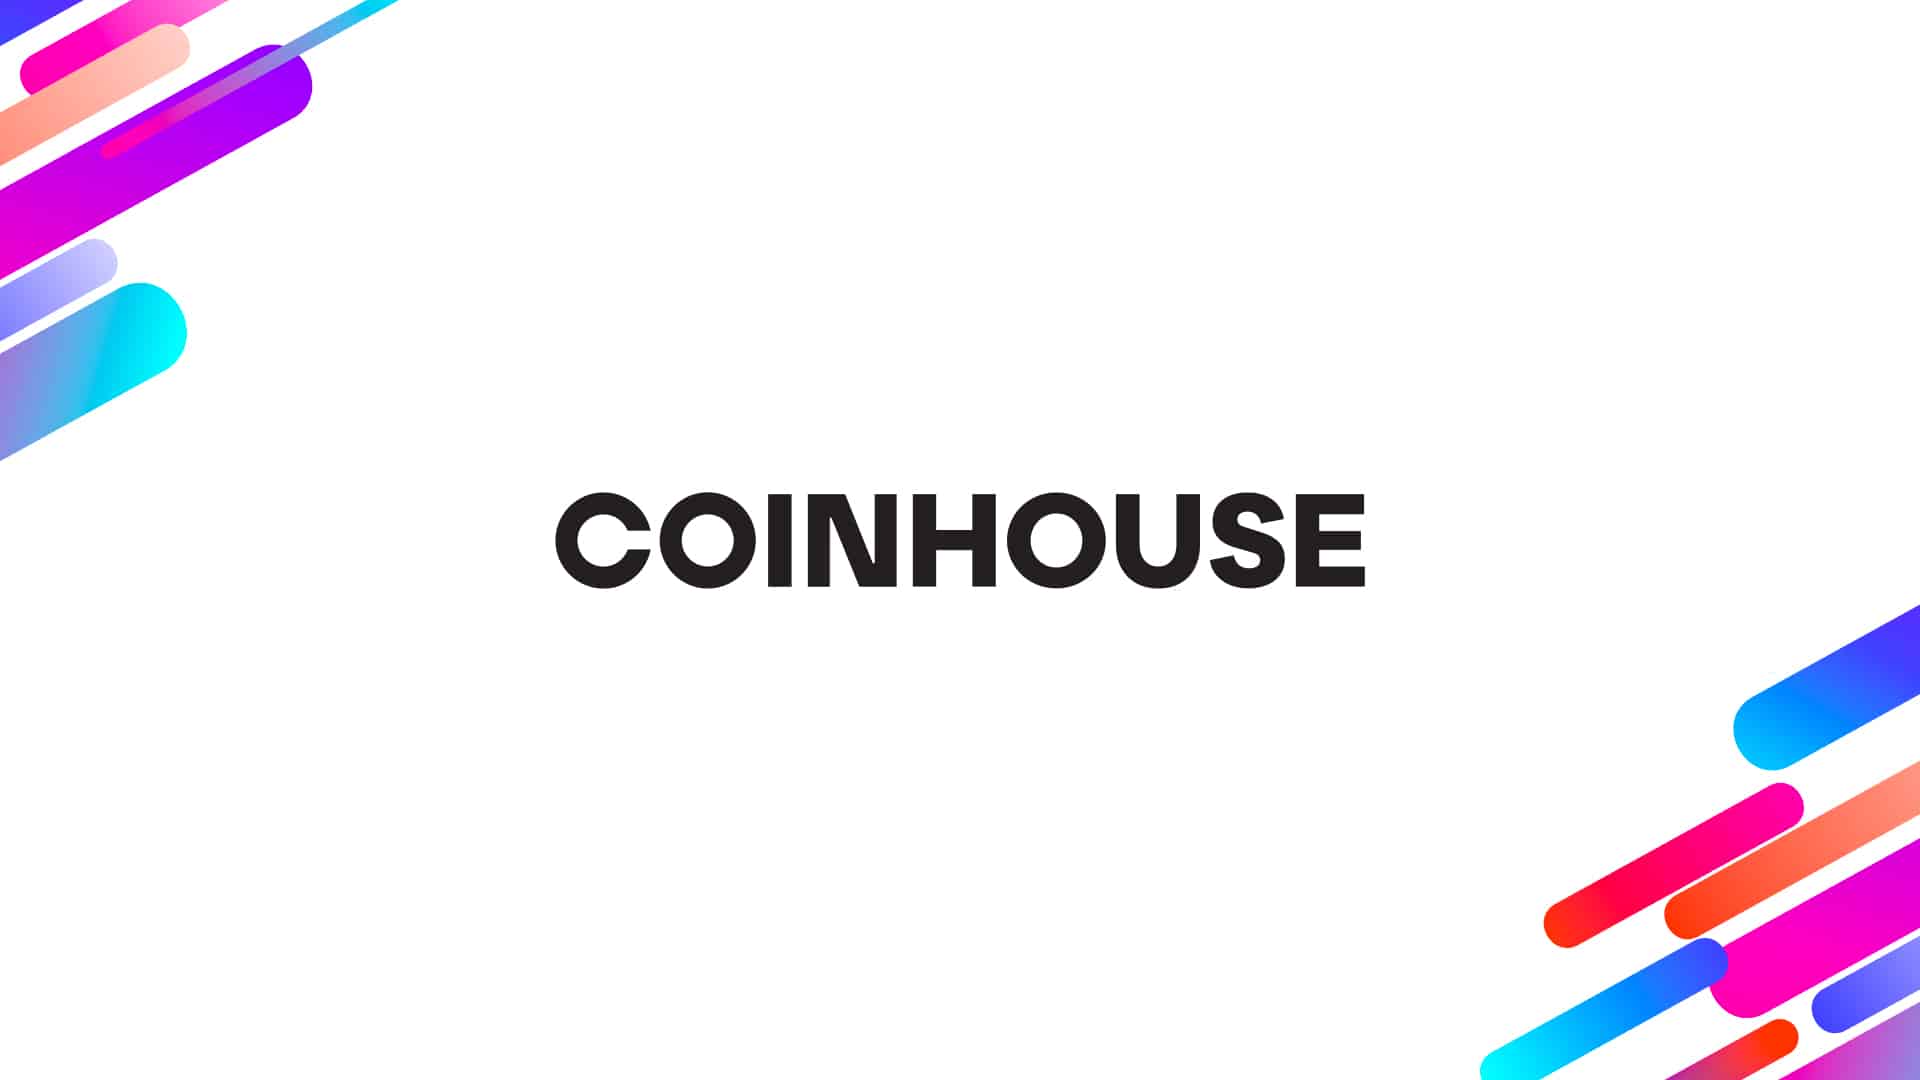 www.coinhouse.com